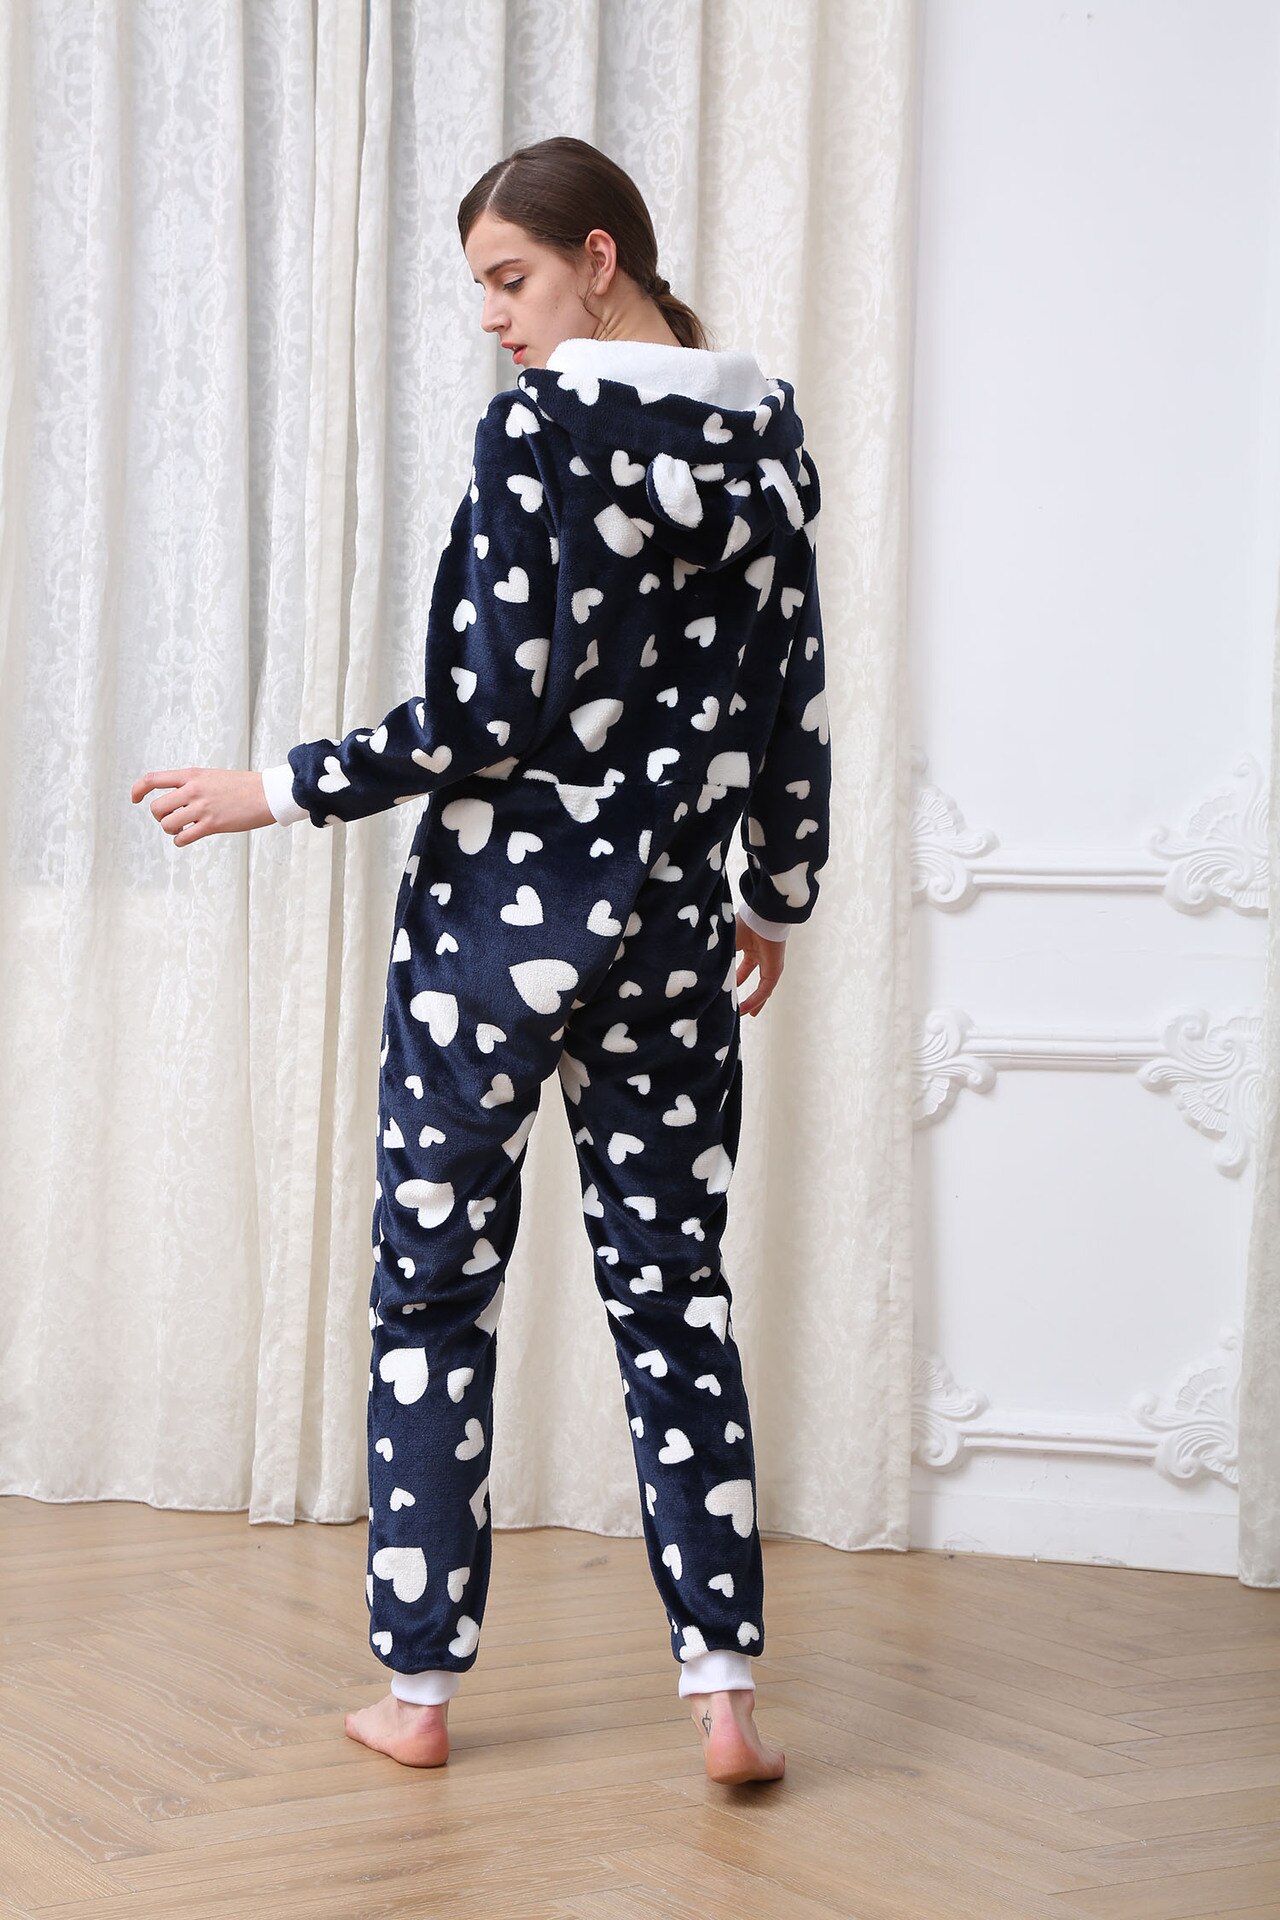 Women Pajamas Zipper Hooded Sleepwear Jumpsuit Plush Onesie Love Print Casual Nightgown Full Sleeve Loose Rompers Nightwear